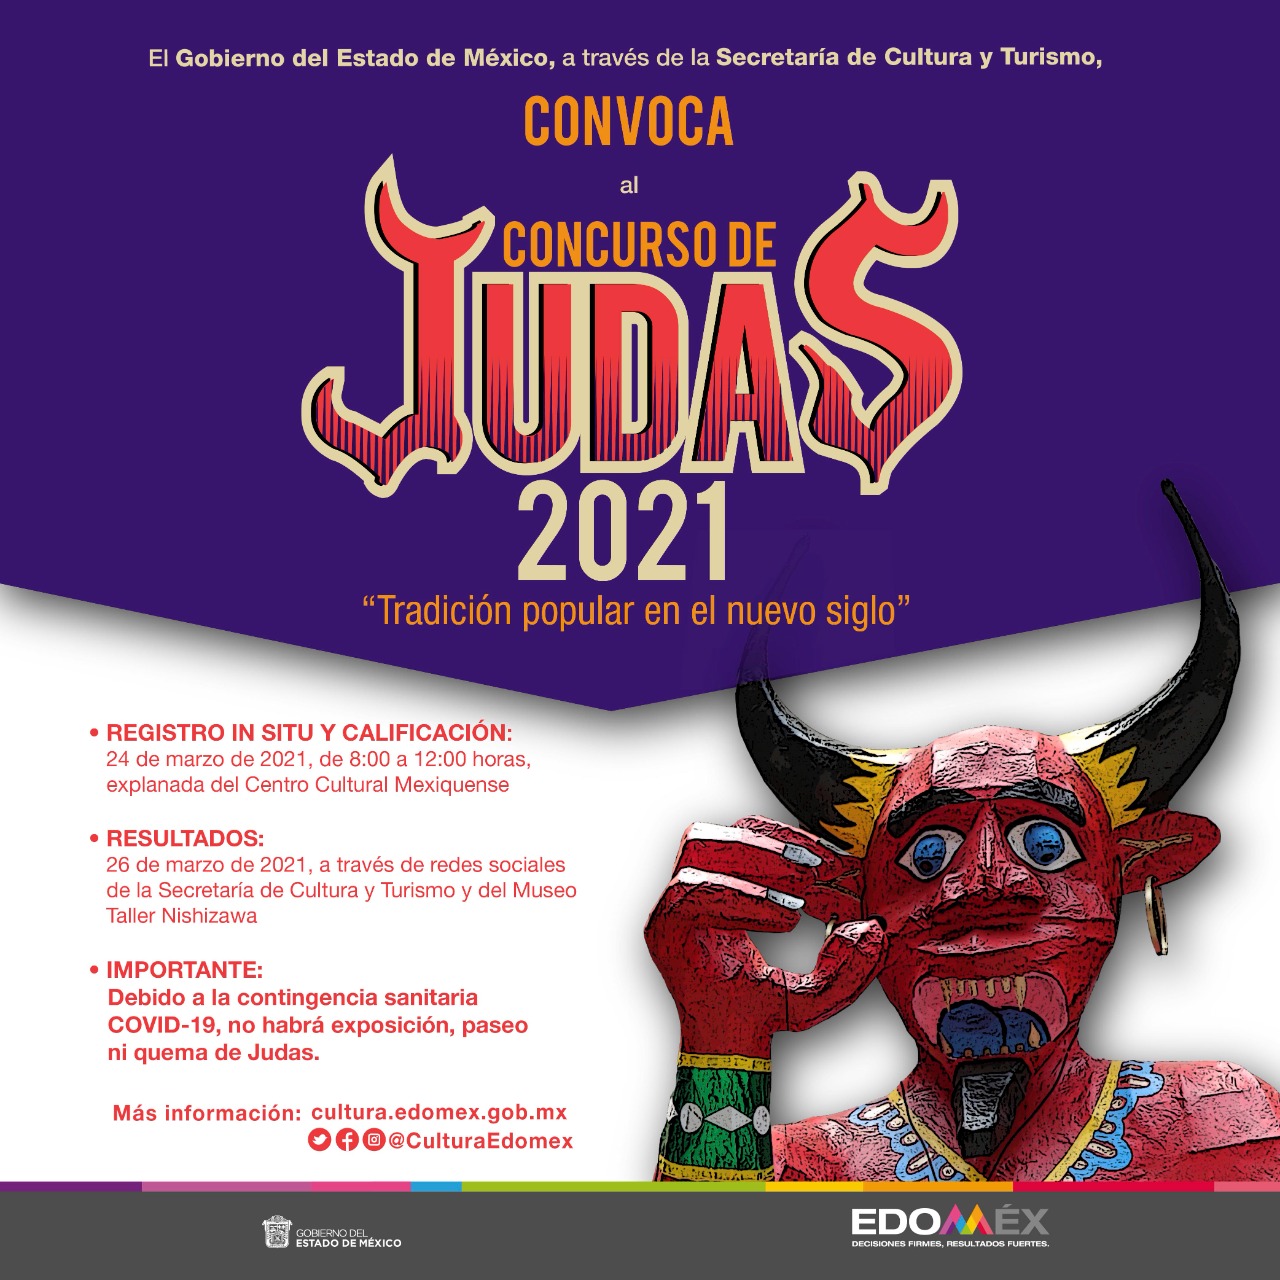 La Secretaría de Cultura y Turismo del Estado de México lanza la Convocatoria Judas 2021